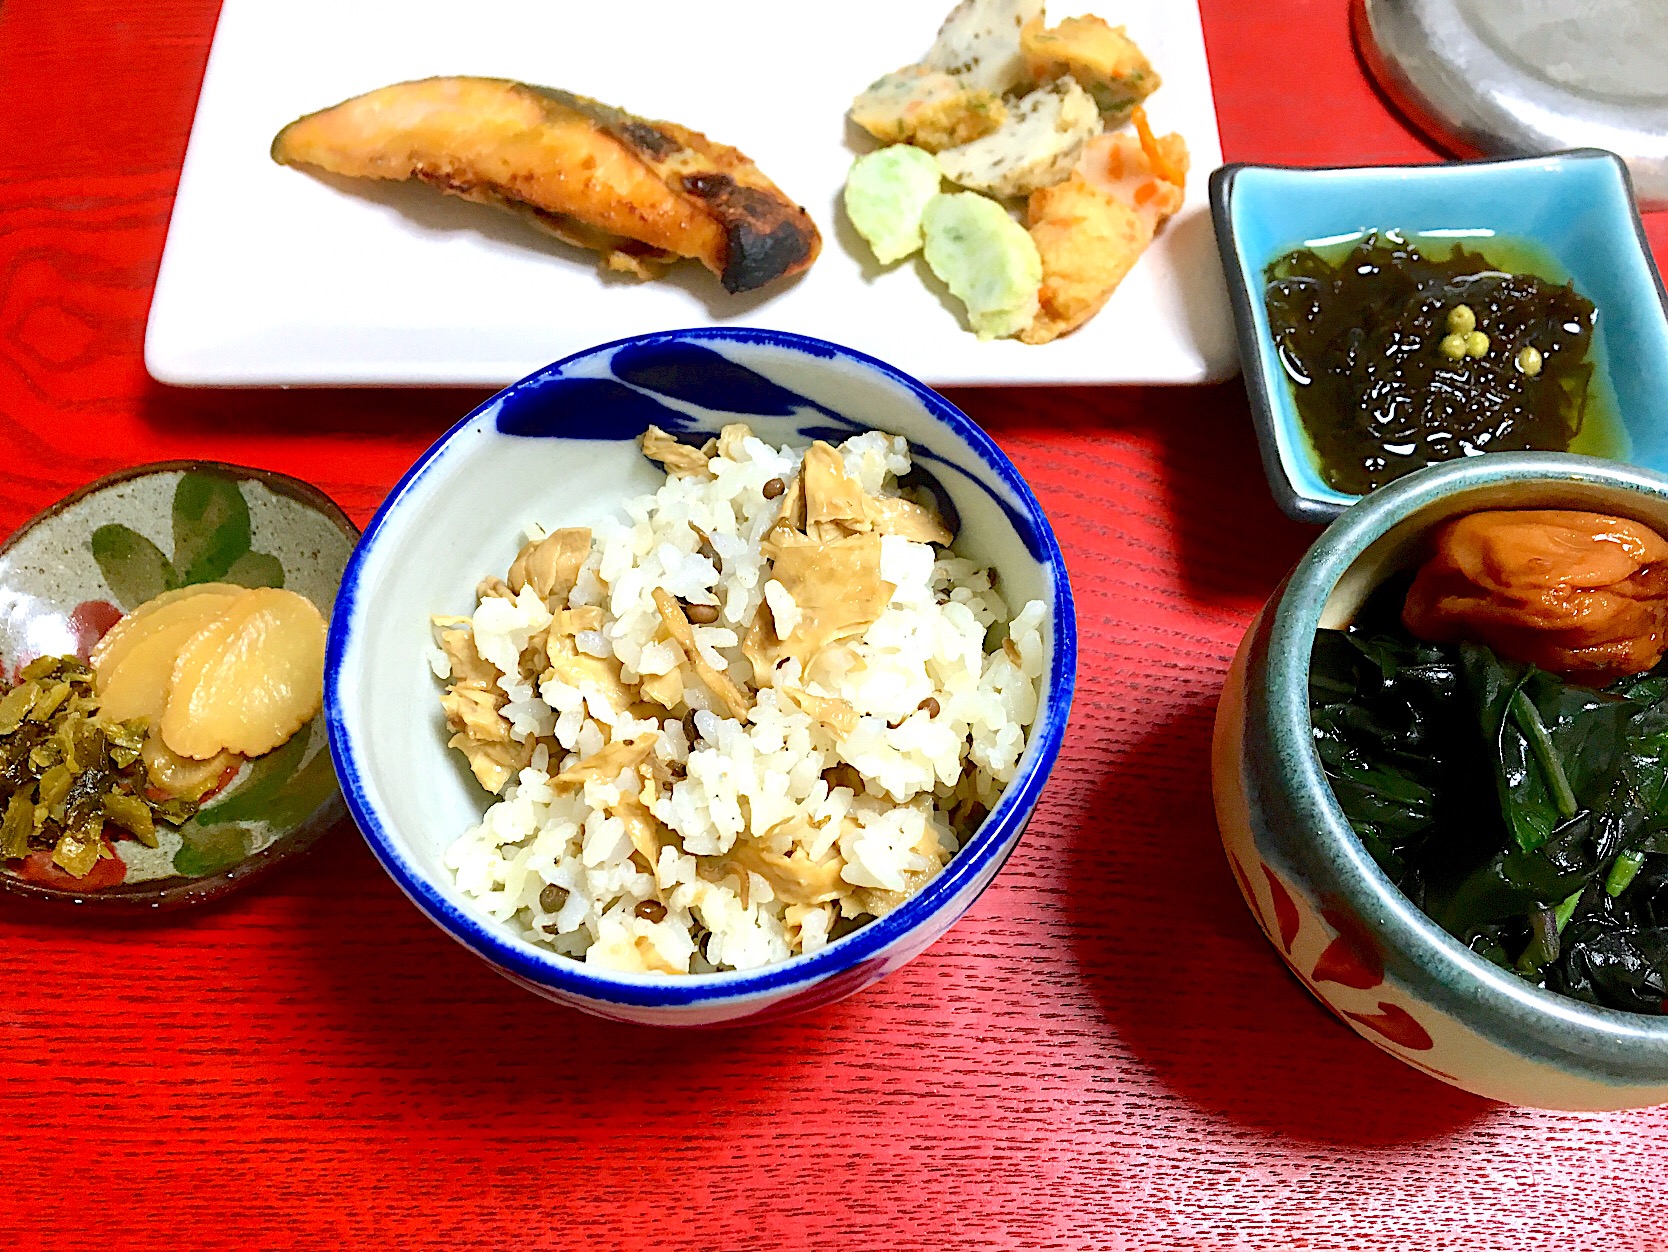 鯛めし(赤ジンミーバイ出汁)の湯葉山椒京風炊き込み混ぜご飯（≧∇≦）炊きたて最高♪